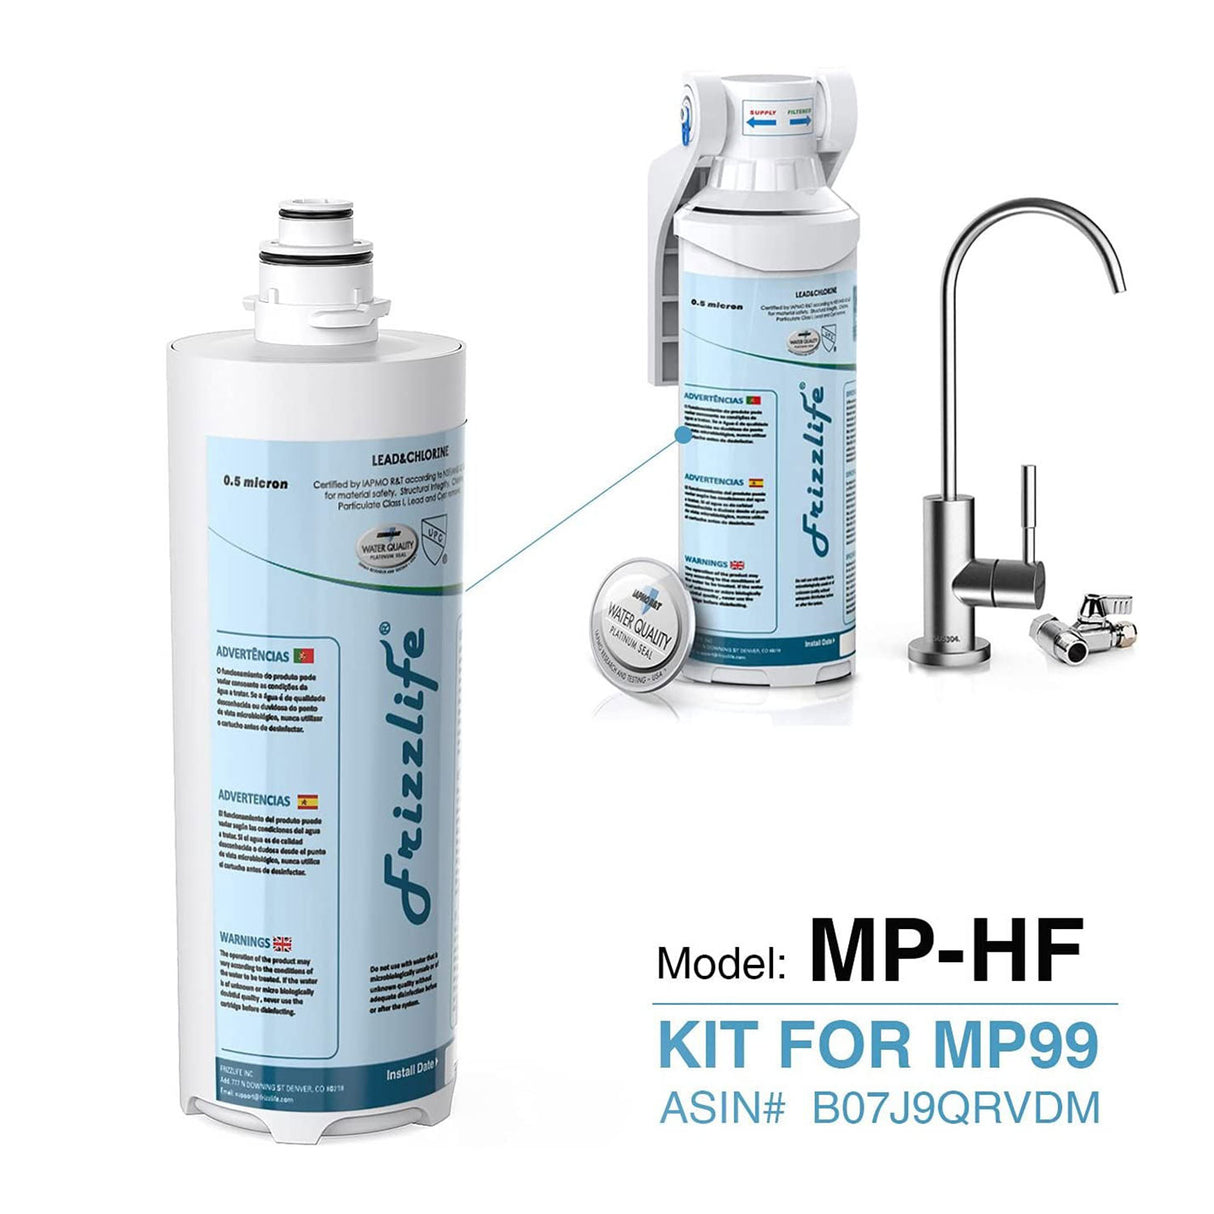 Frizzlife MP-HF Ersatzfilterpatronen-Set für MP99 – inklusive Filterpatrone und Filtergehäuse